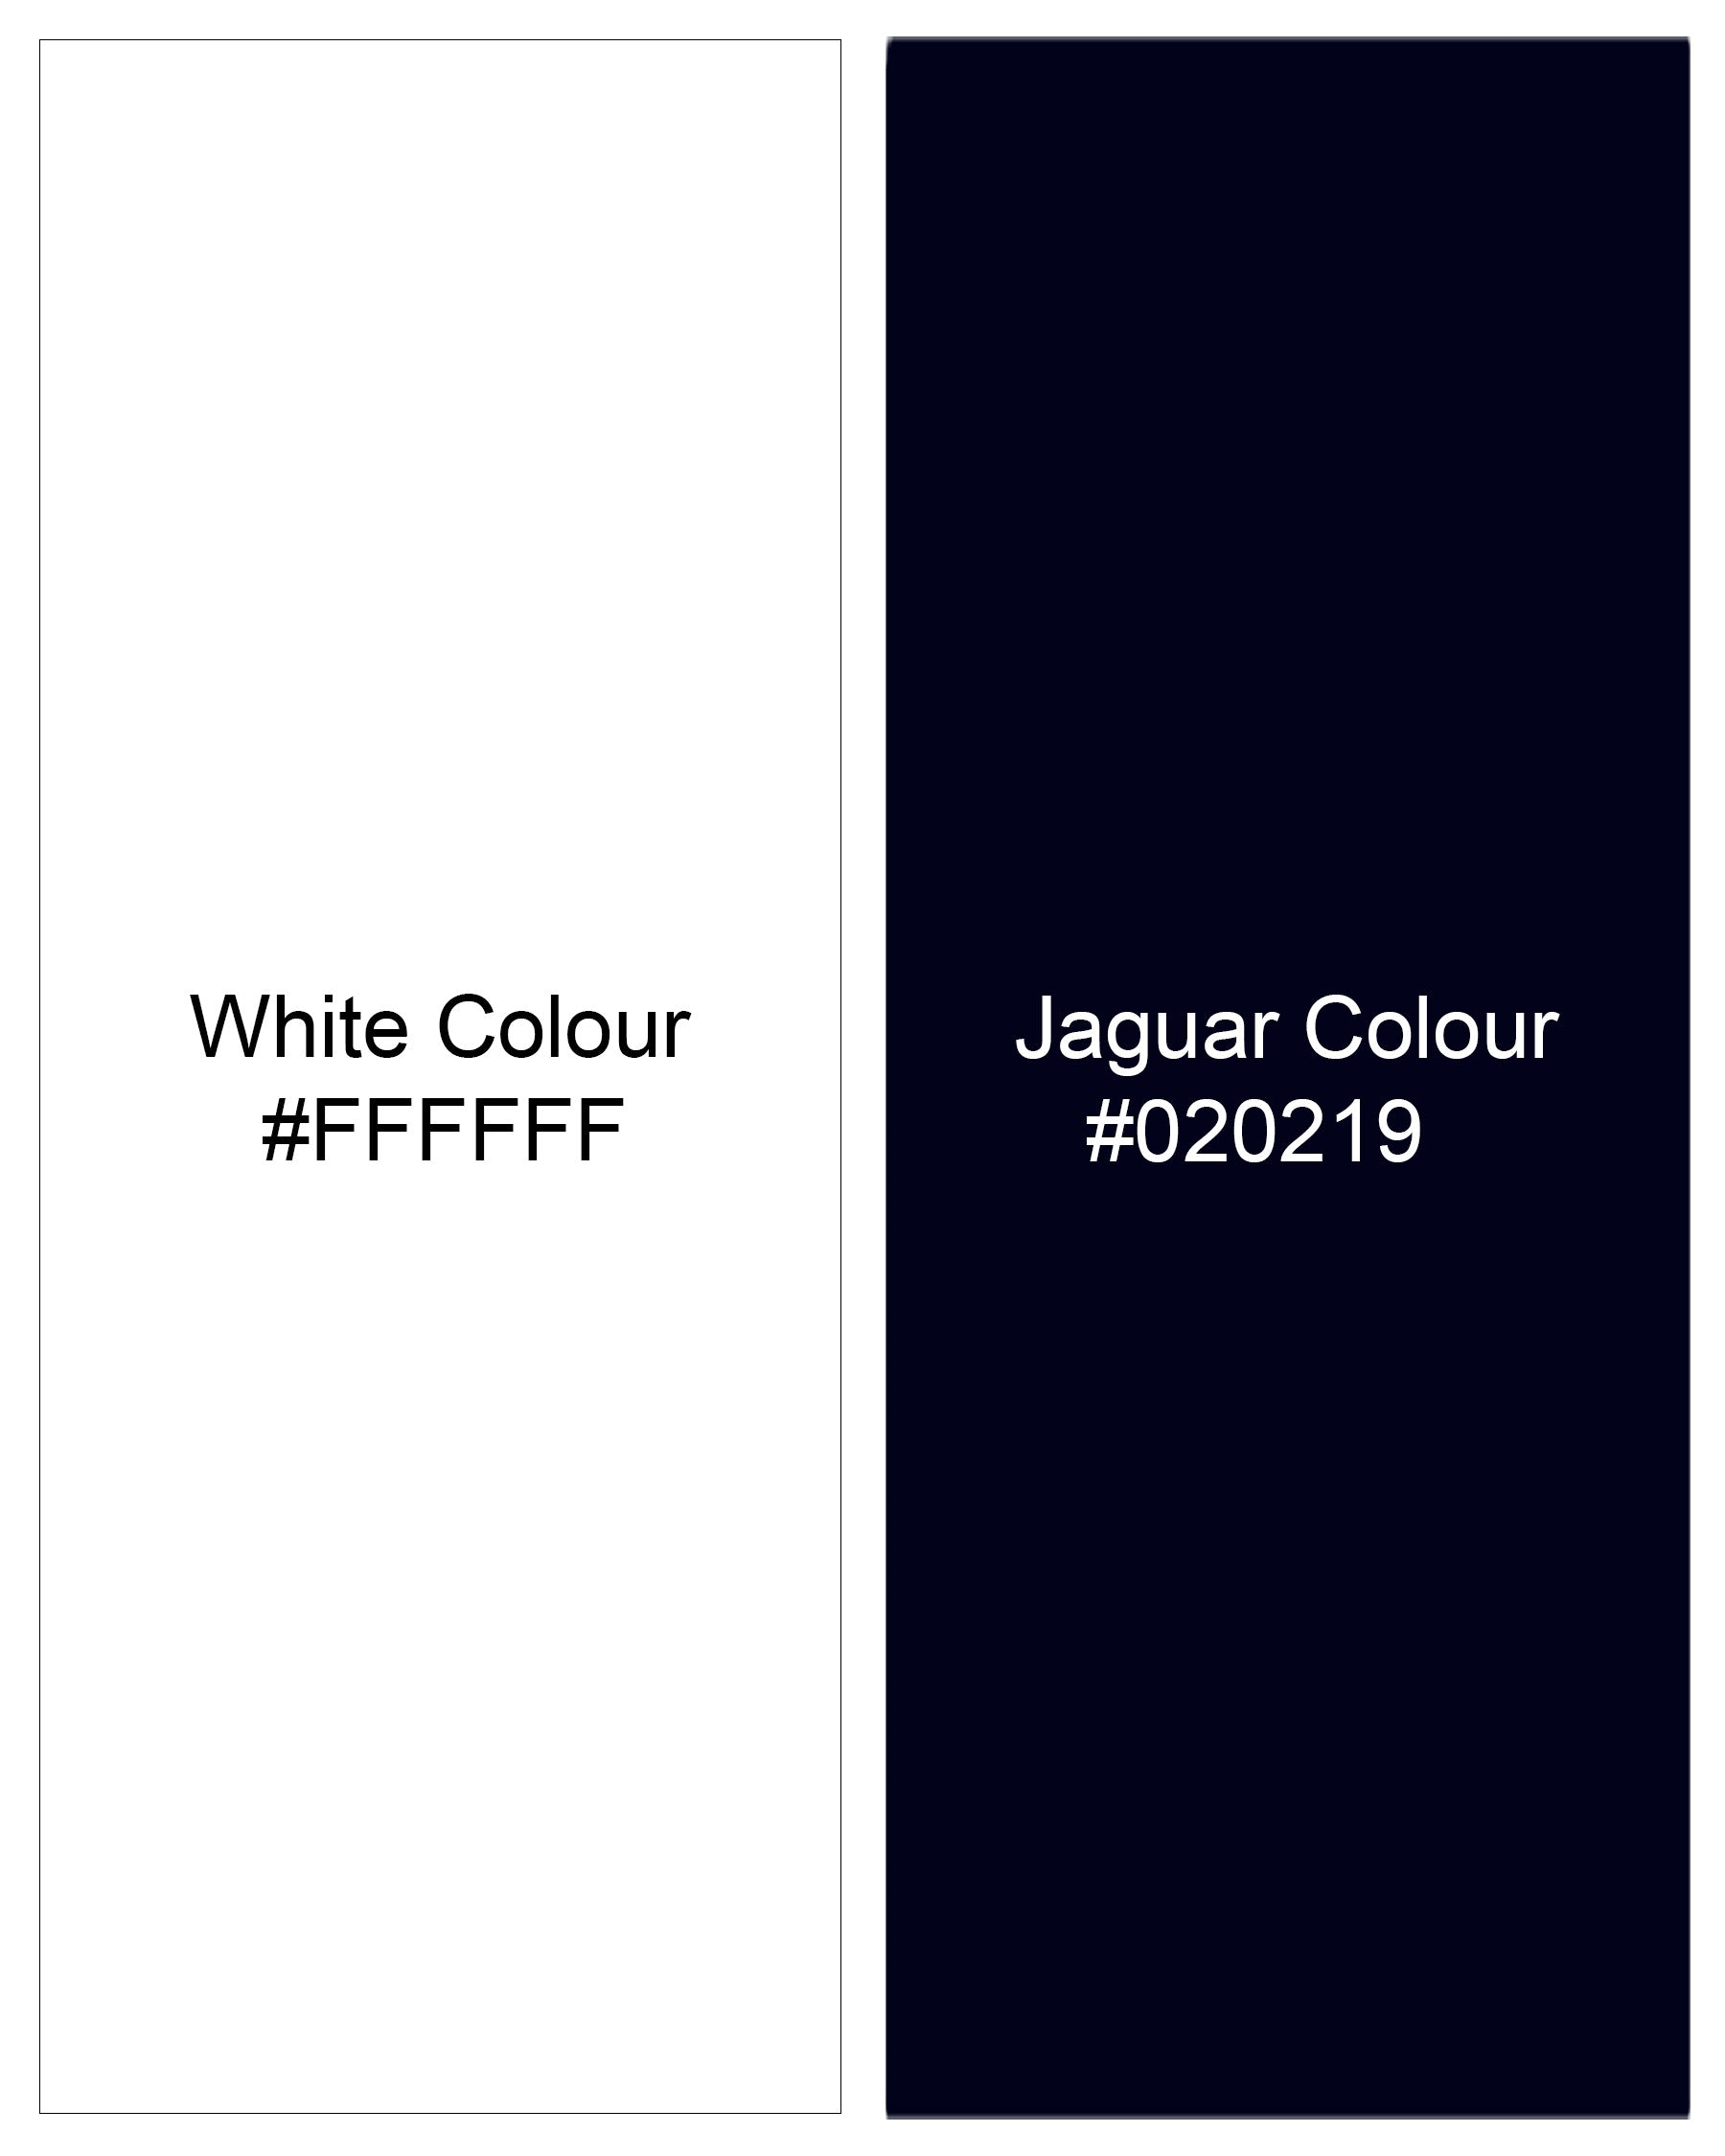 Bright White with Jaguar Navy Blue Twill Plaid Premium Cotton Shirt 8077-BD-BLE-38,8077-BD-BLE-H-38,8077-BD-BLE-39,8077-BD-BLE-H-39,8077-BD-BLE-40,8077-BD-BLE-H-40,8077-BD-BLE-42,8077-BD-BLE-H-42,8077-BD-BLE-44,8077-BD-BLE-H-44,8077-BD-BLE-46,8077-BD-BLE-H-46,8077-BD-BLE-48,8077-BD-BLE-H-48,8077-BD-BLE-50,8077-BD-BLE-H-50,8077-BD-BLE-52,8077-BD-BLE-H-52